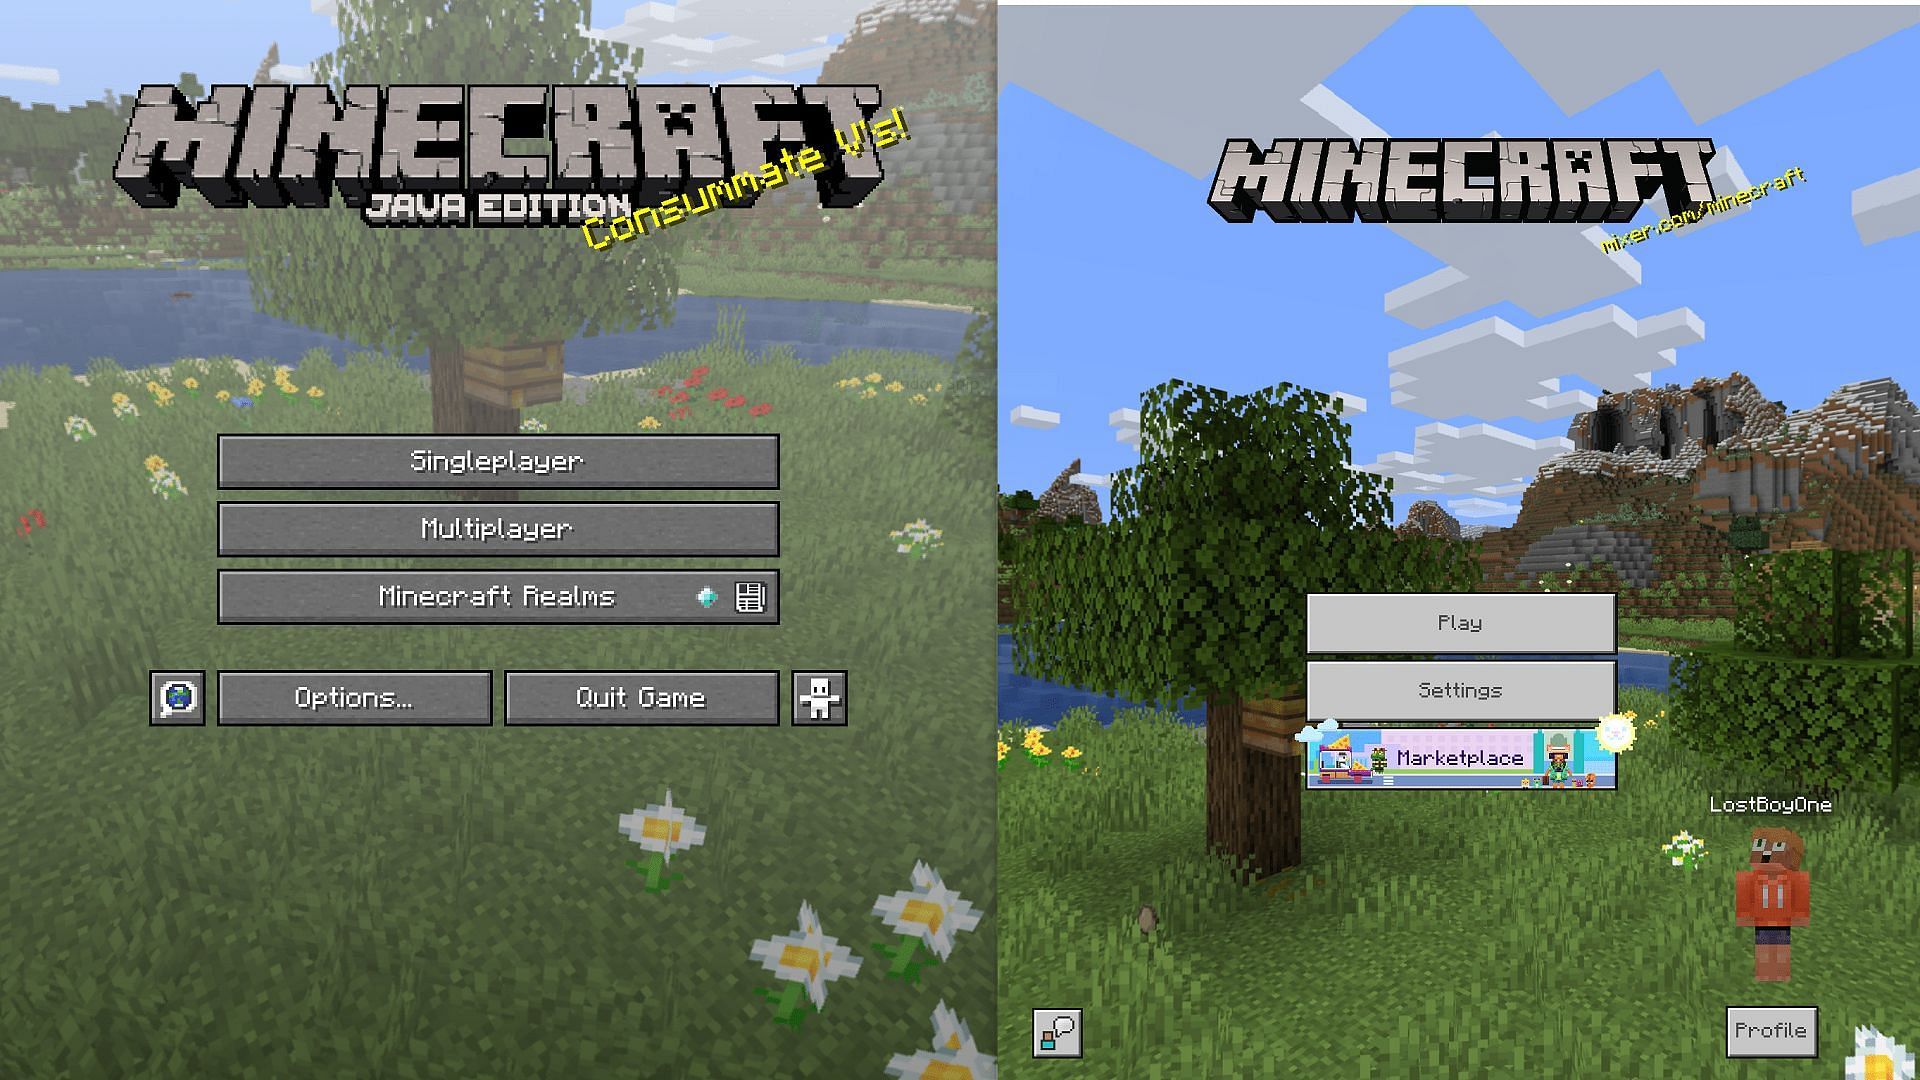 Java and Bedrock Edition main menus in Minecraft (Image via Mojang)